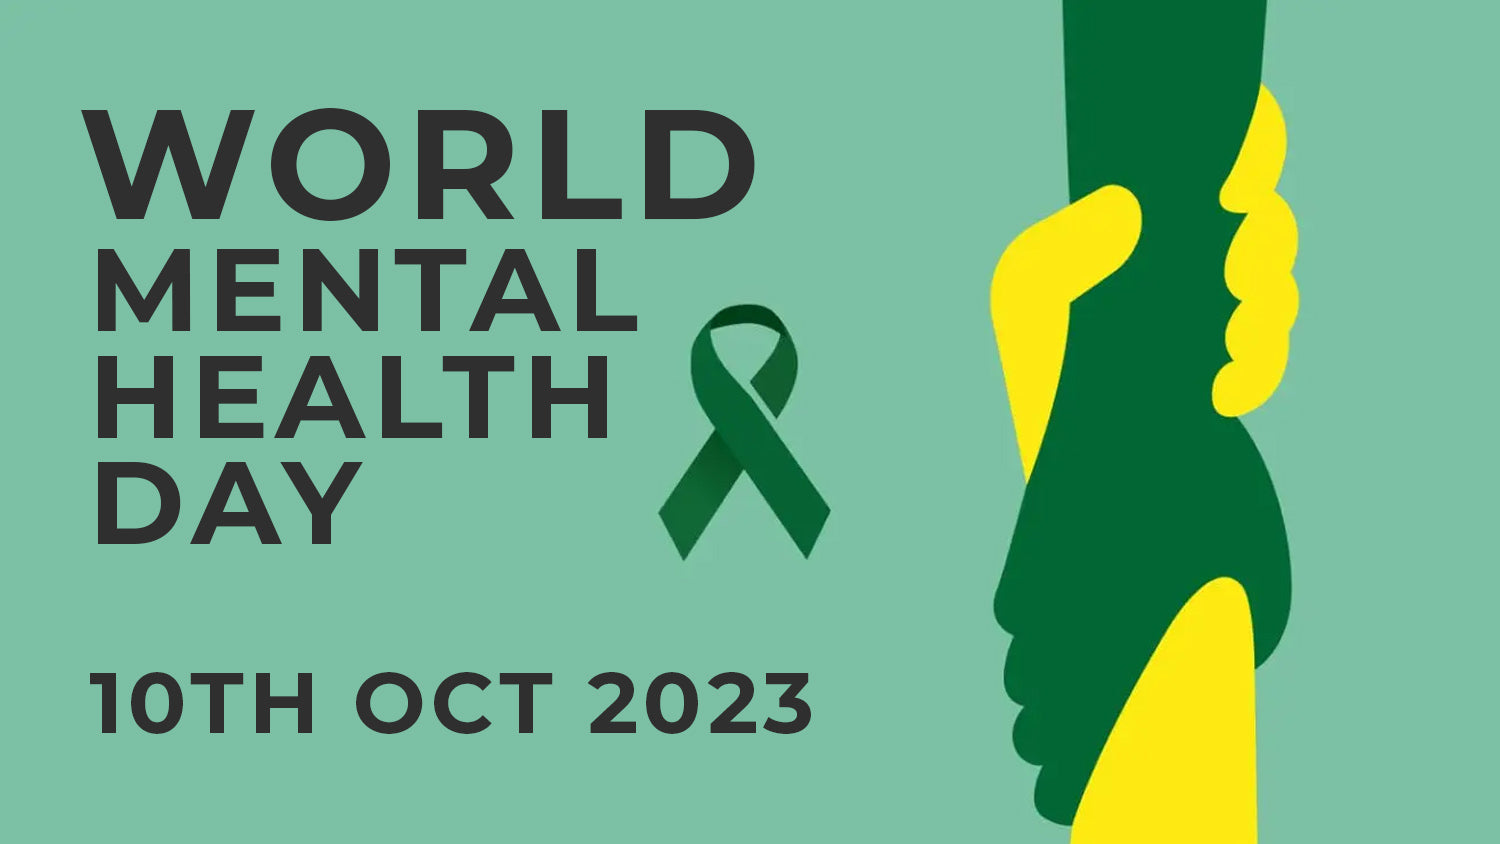 World Mental Health Day 2022 - TF Tools Ltd